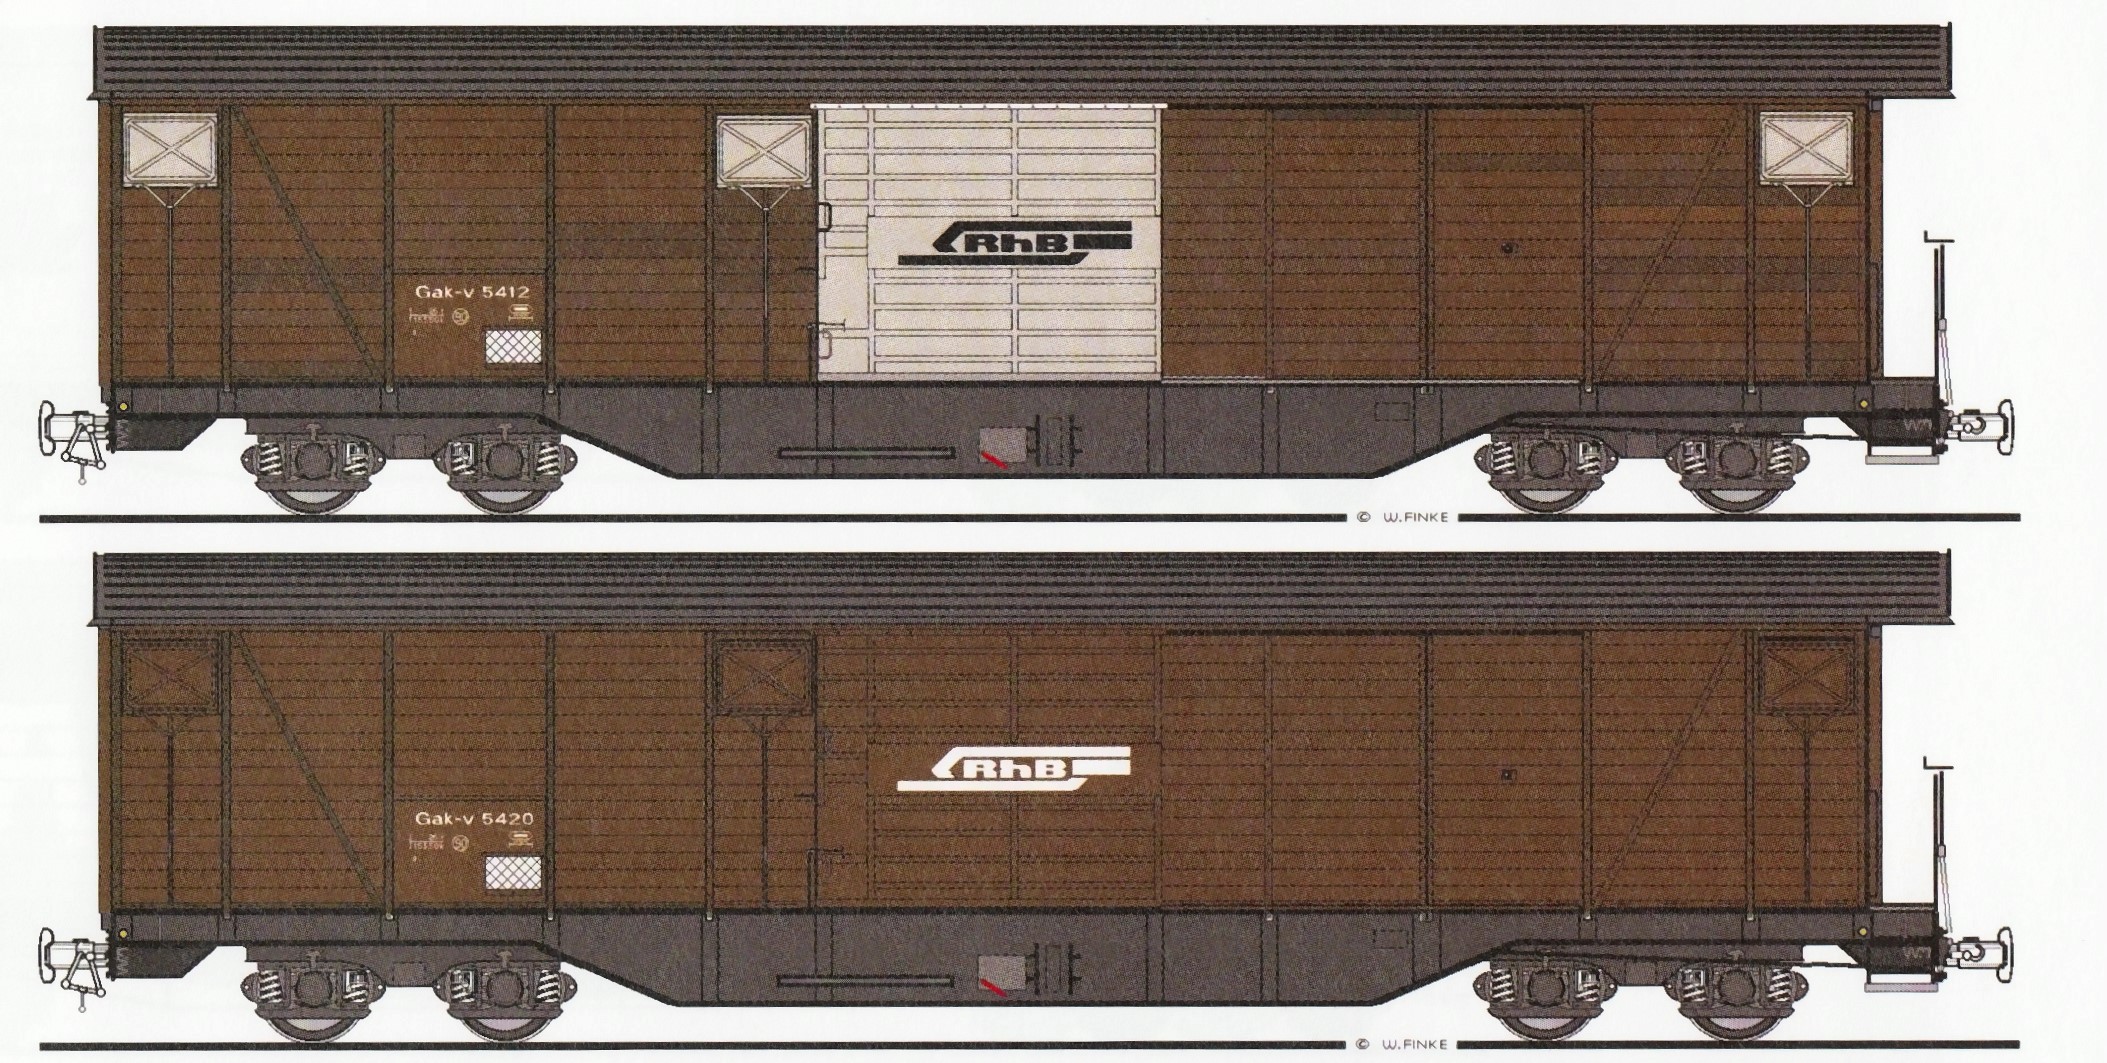 Illustration der vierachsigen Grossraum Gterwagen der RhB - Gak-v